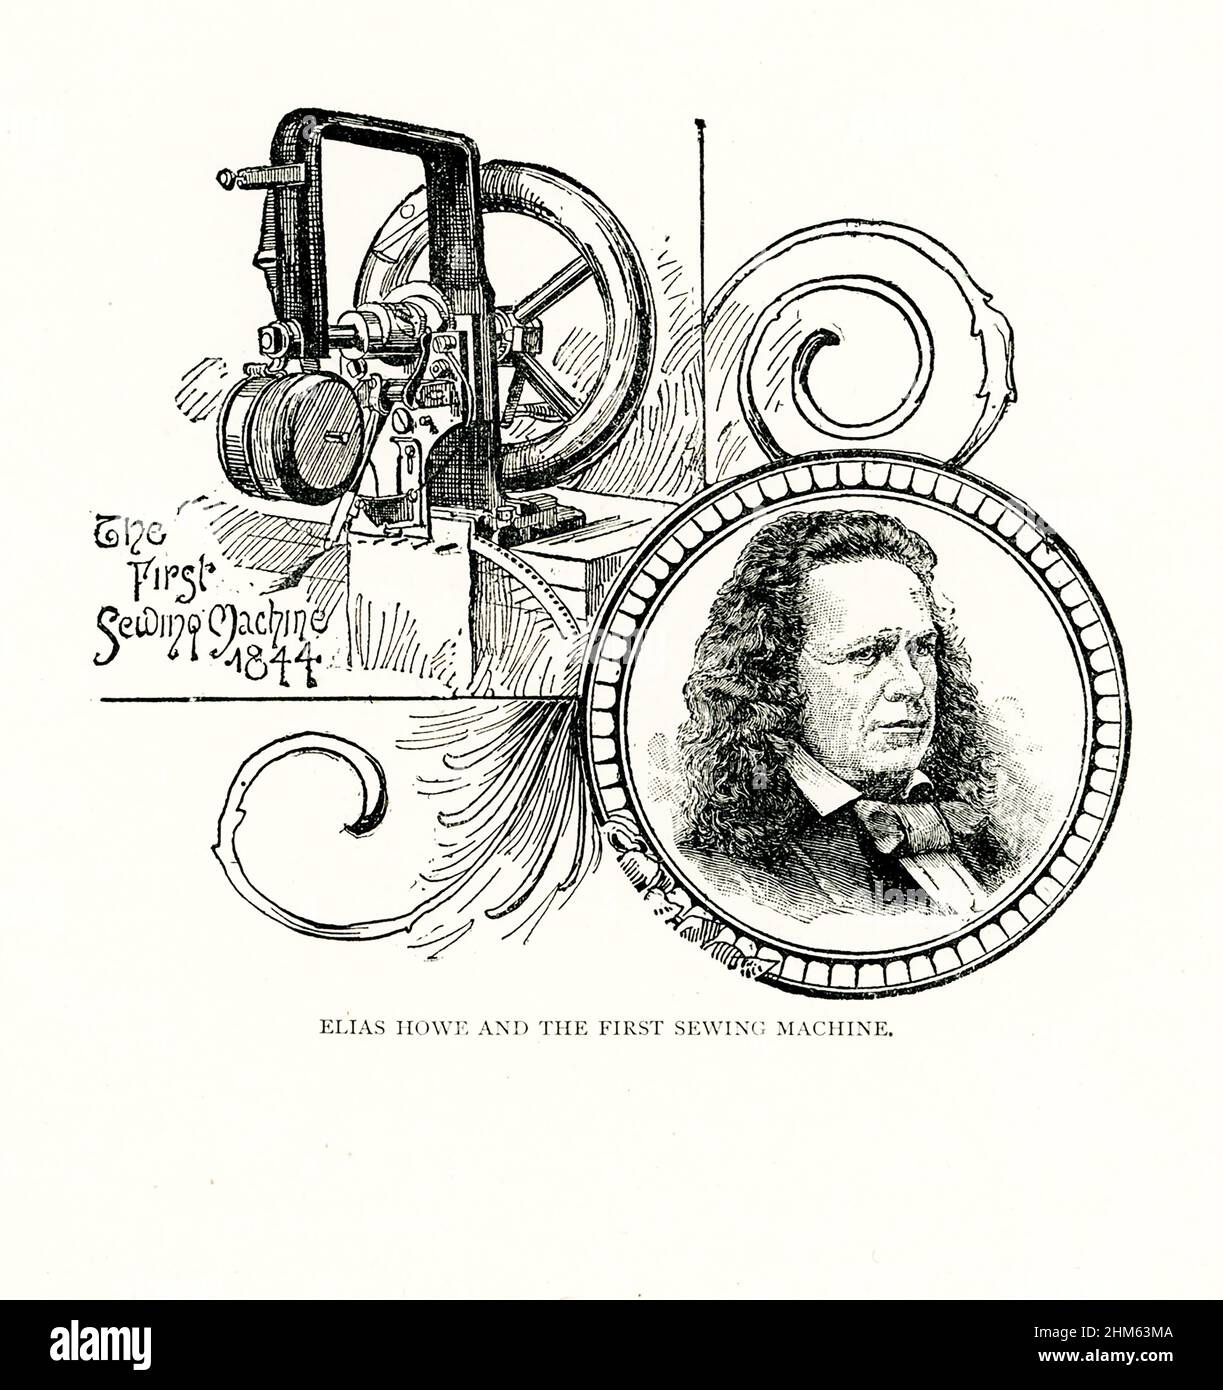 La légende de ces 1891 images est la suivante : Eliza Howe et la première machine à coudre.Elias (aussi orthographié eliza) Howe Jr. (1819 –1867) était un inventeur américain plus connu pour sa création de la machine à coudre moderne. Banque D'Images